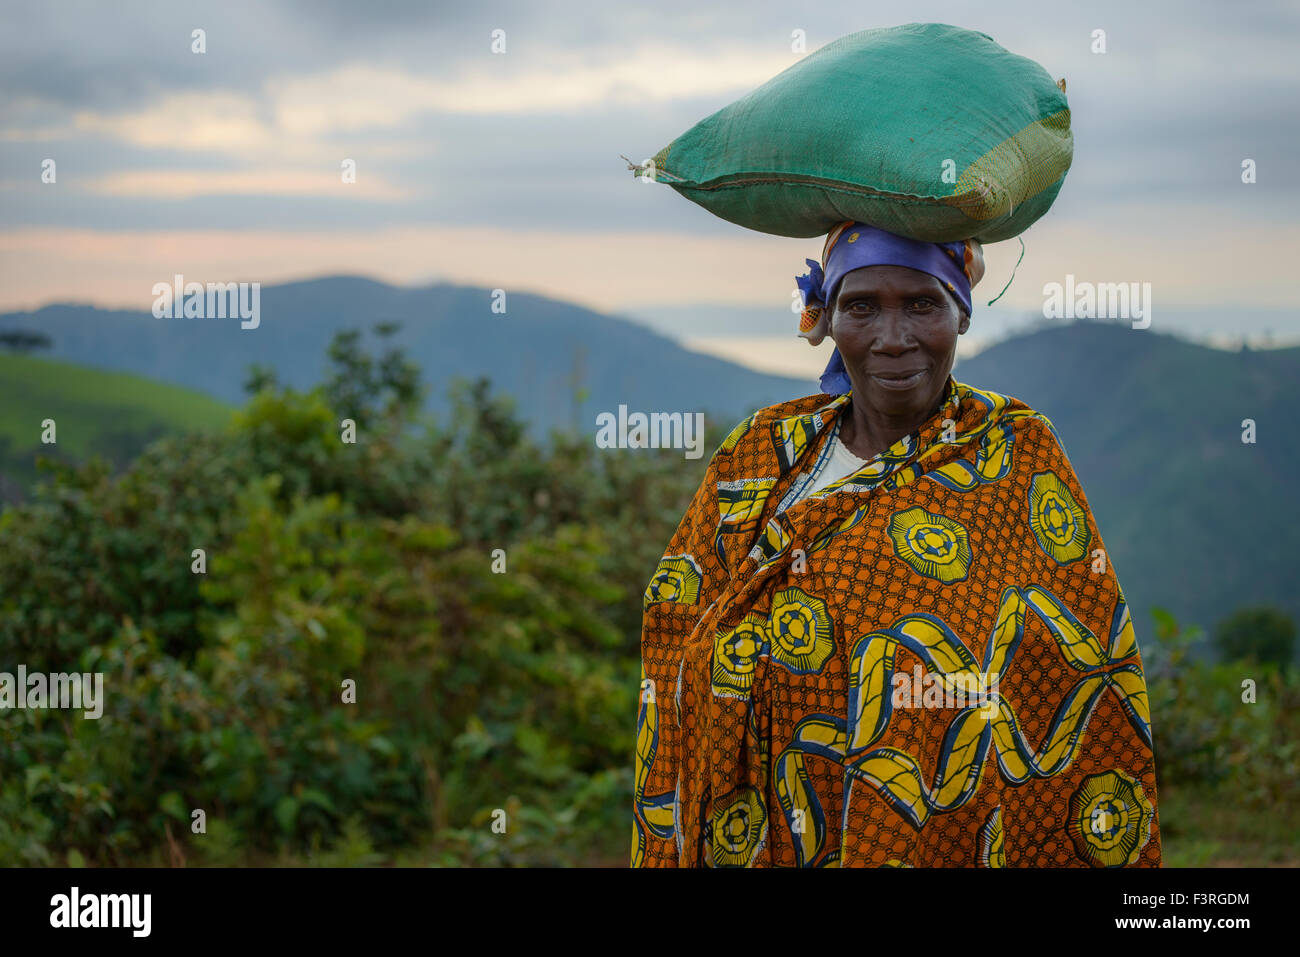 Frau mit Tracht, Burundi, Afrika Stockfoto